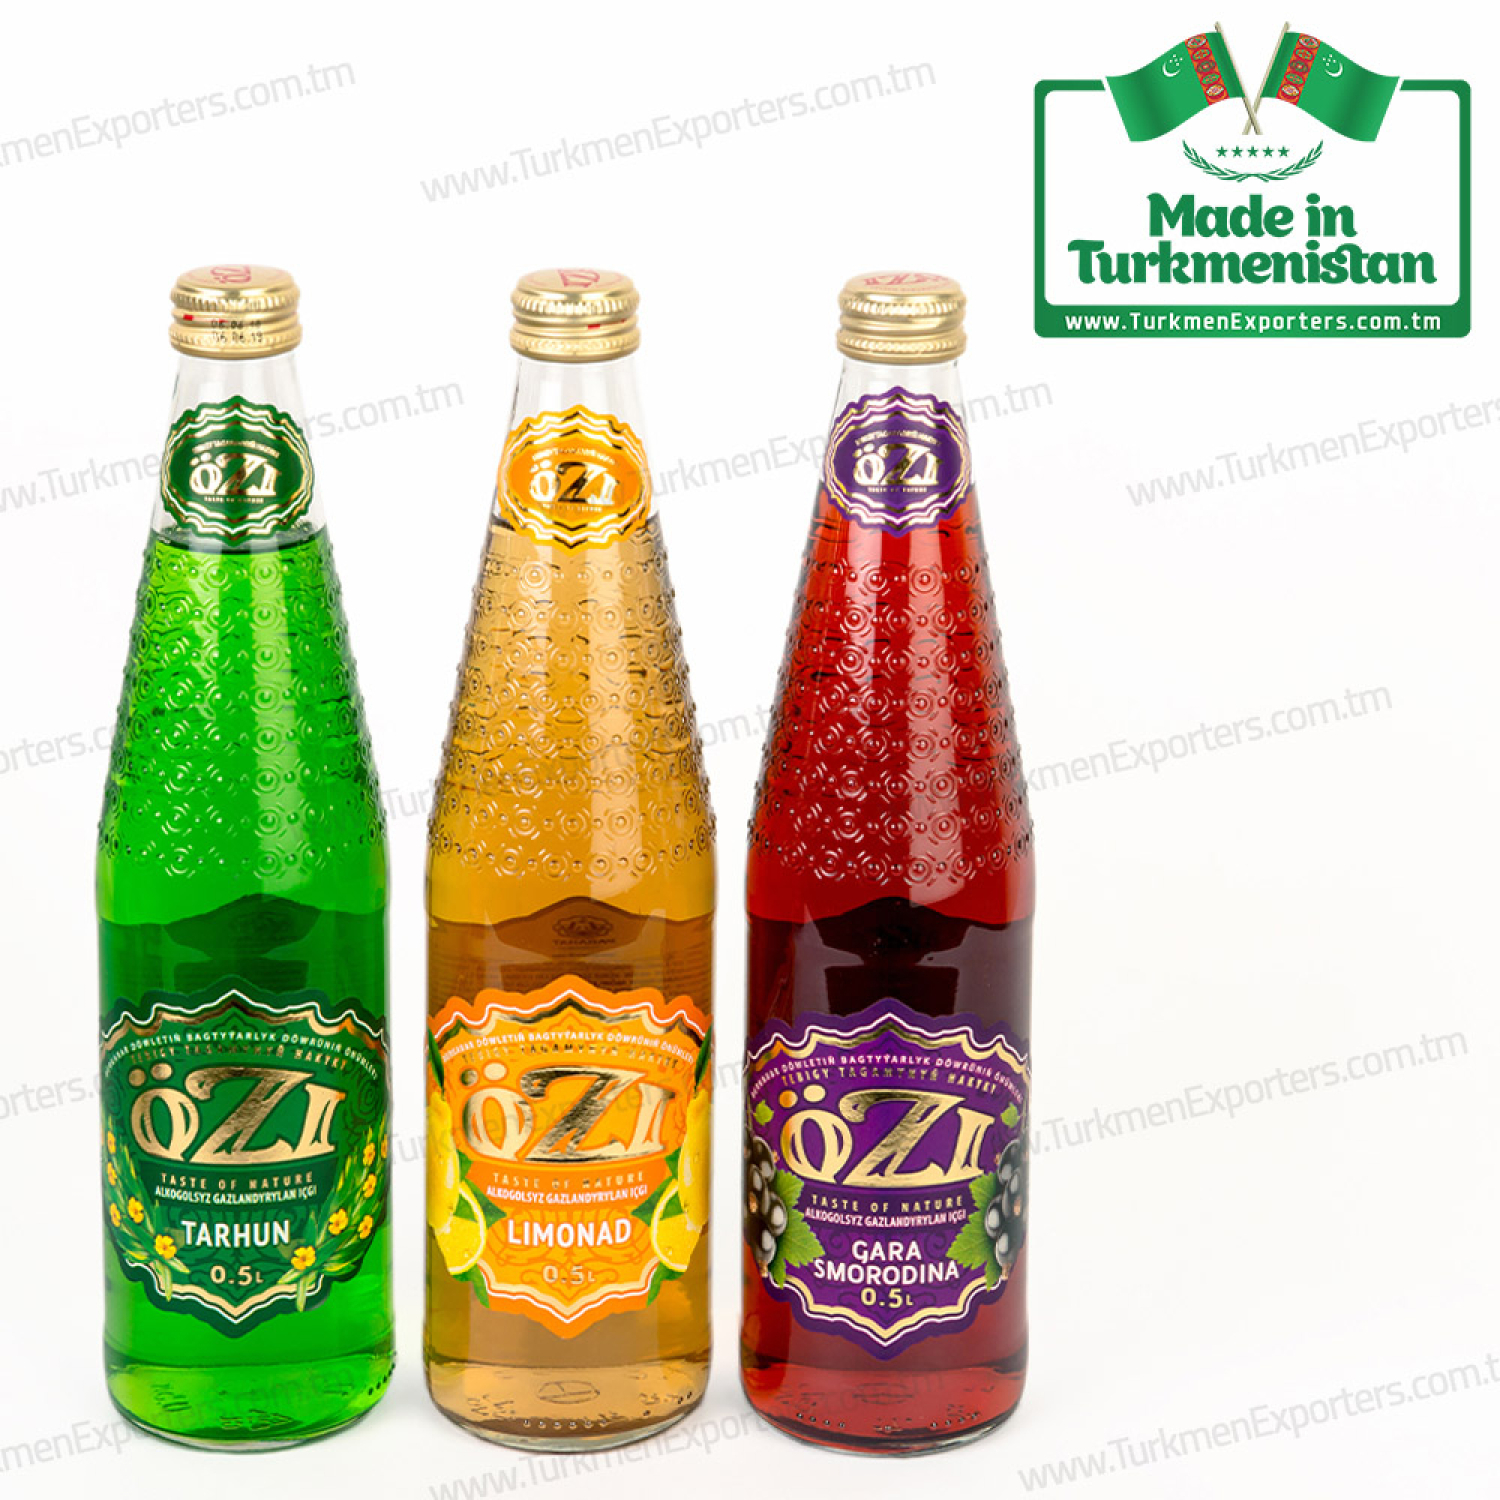 Non-alcoholic beverage wholesale from Turkmenistan | Parahat individual enterprise